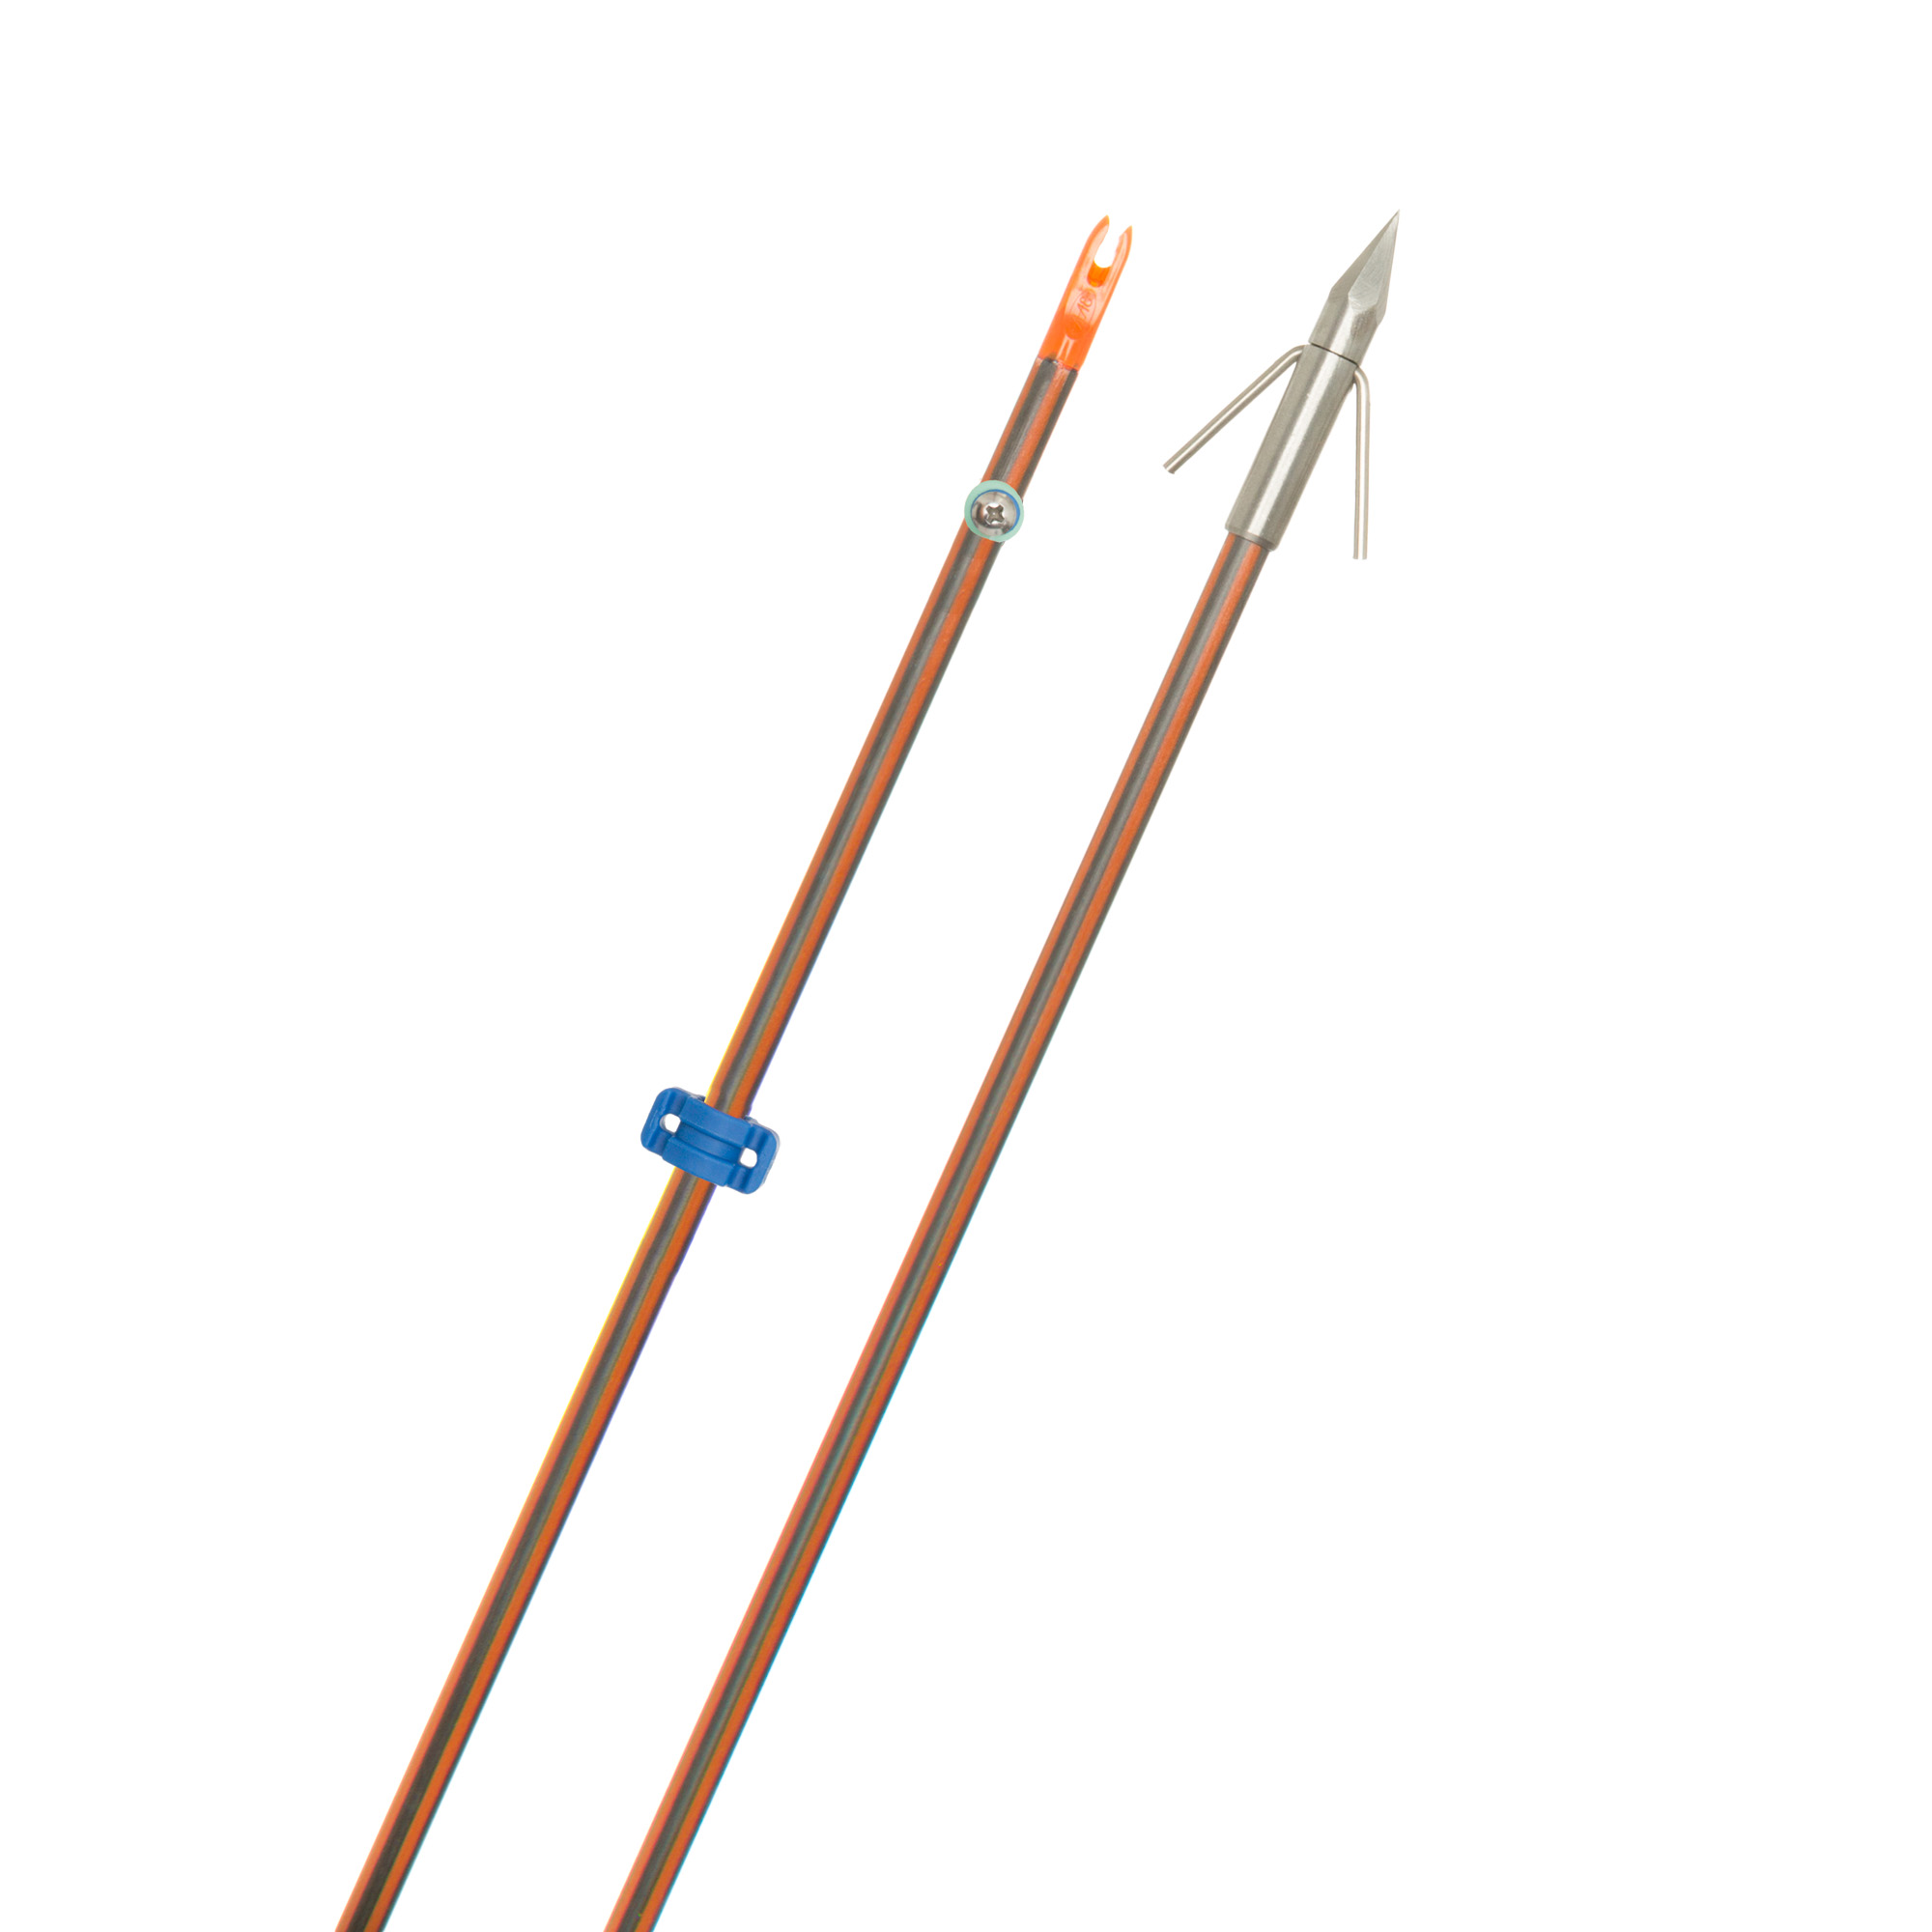 Hydro-Carbon IL Bowfishing Arrow w/Big Head Point